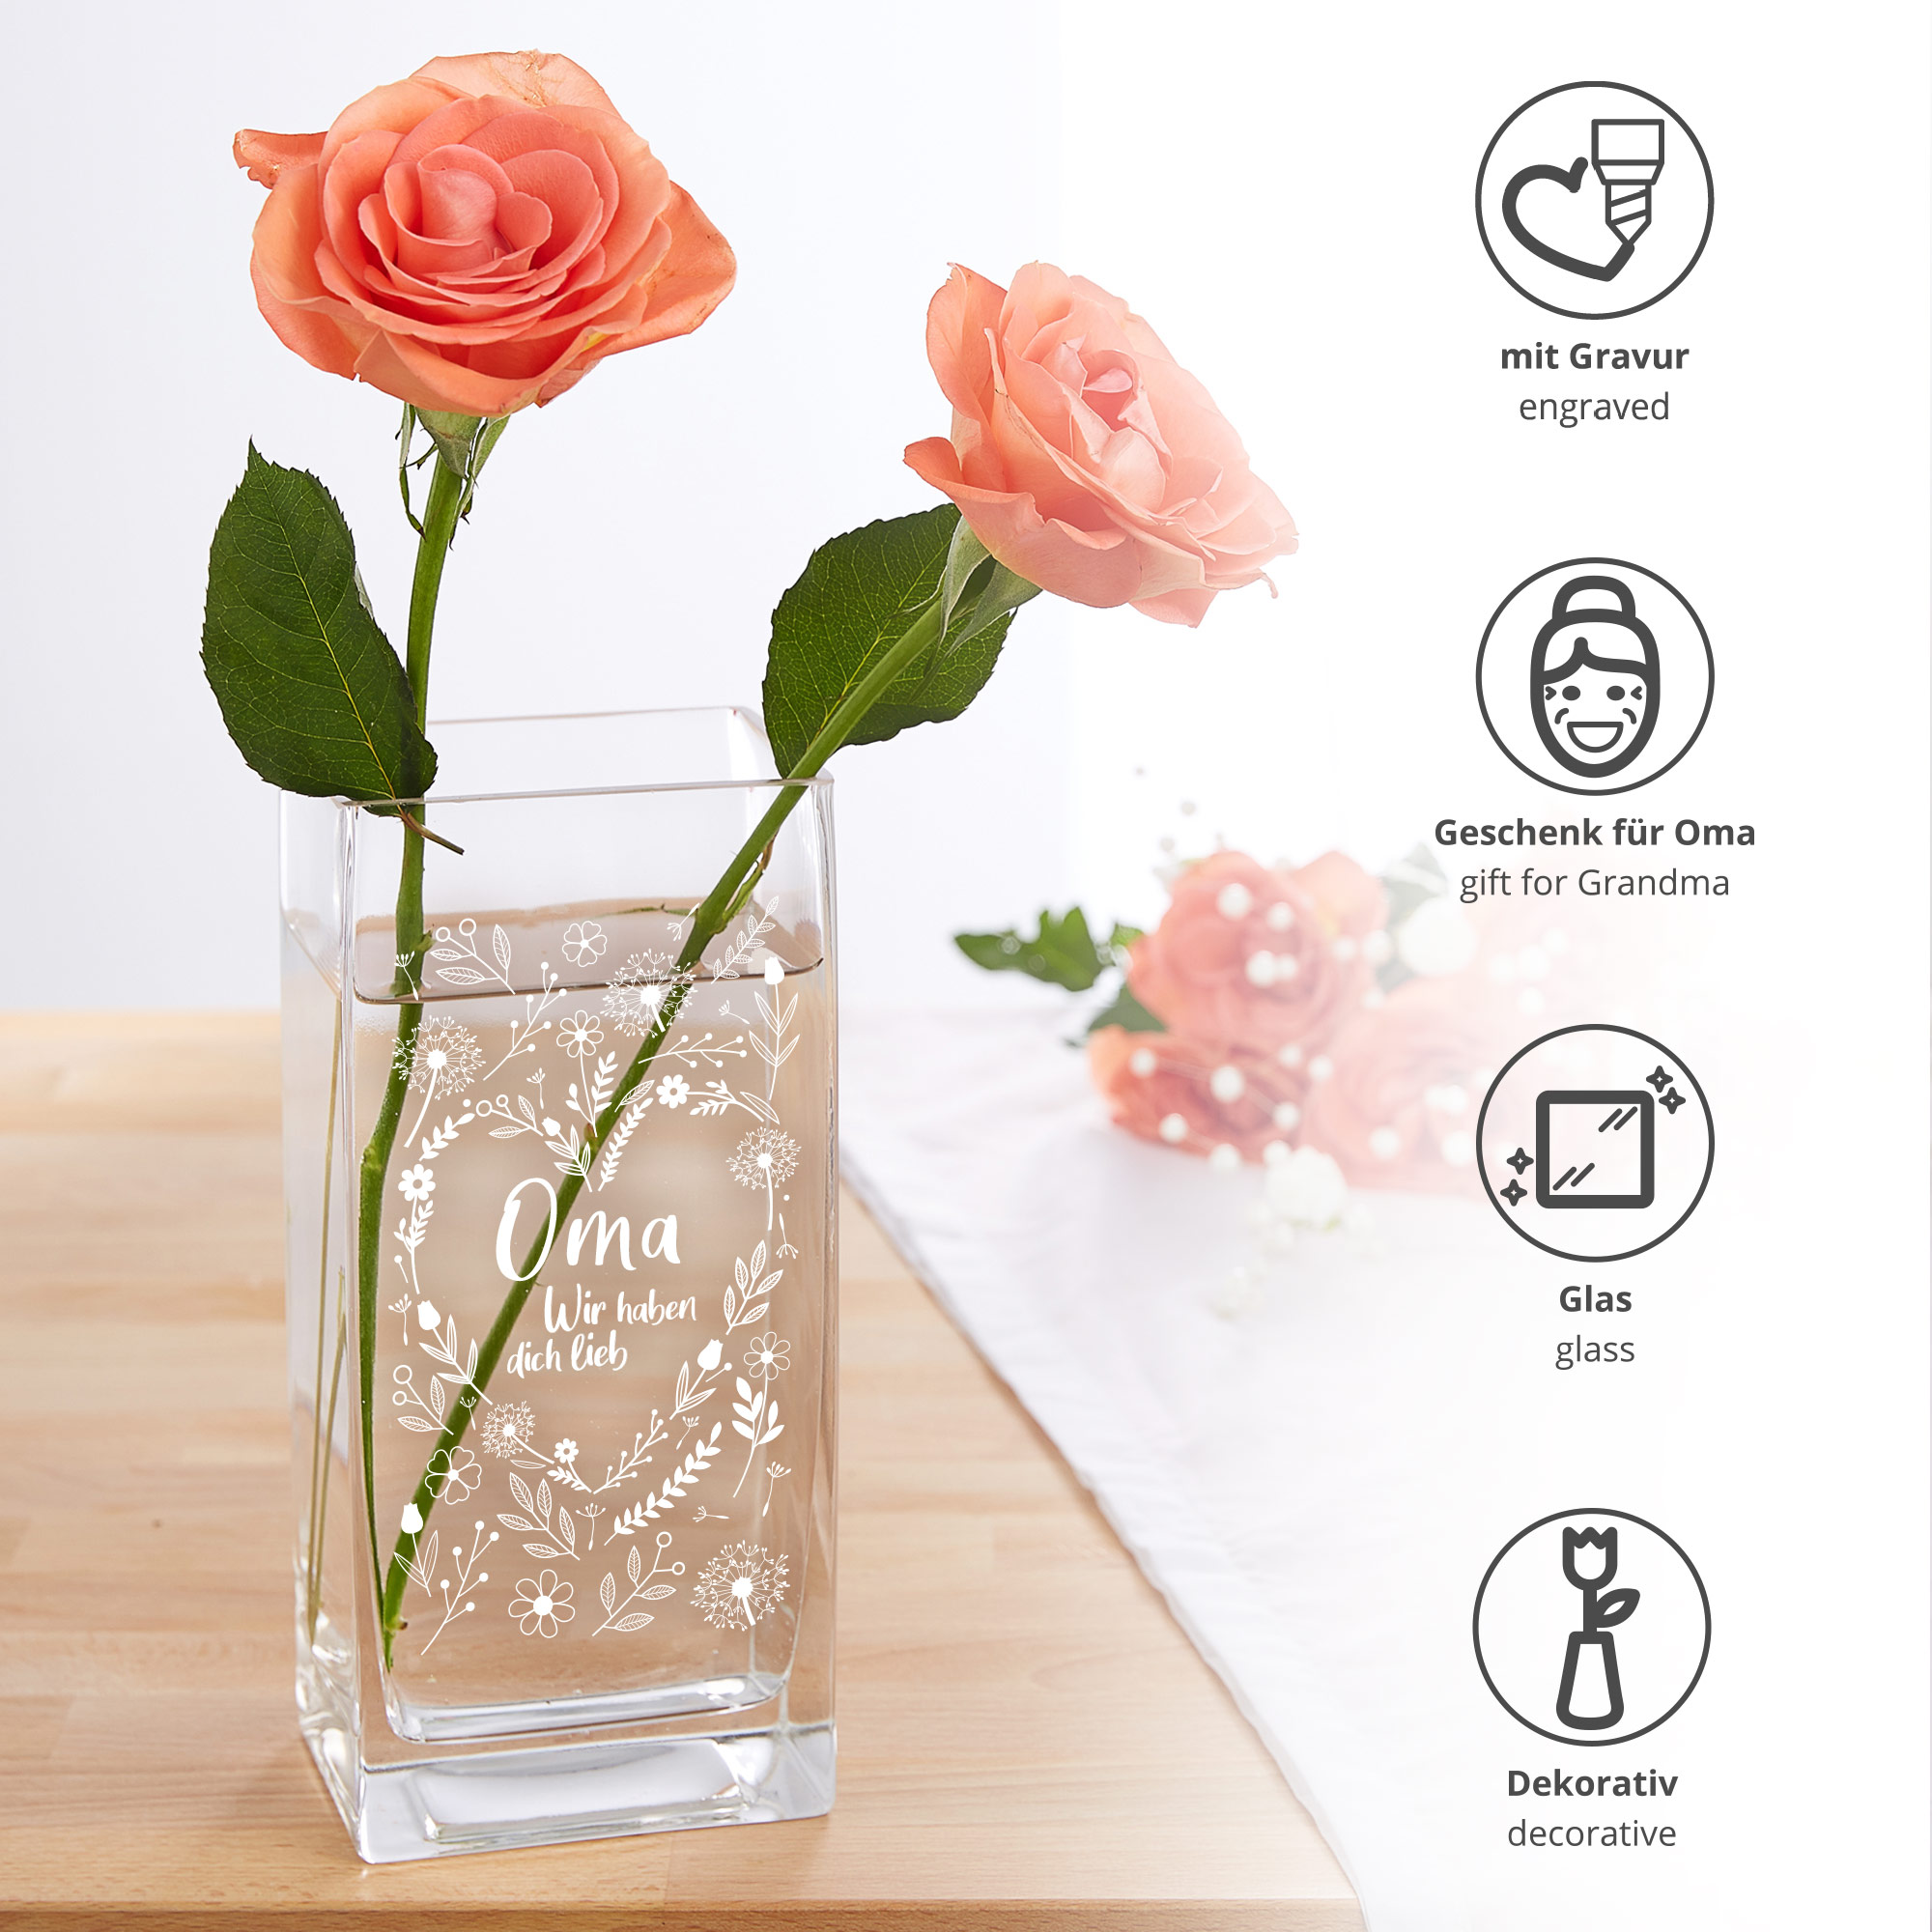 Eckige Vase - Blumenherz für Oma 0006-0019-112-AZ - 3